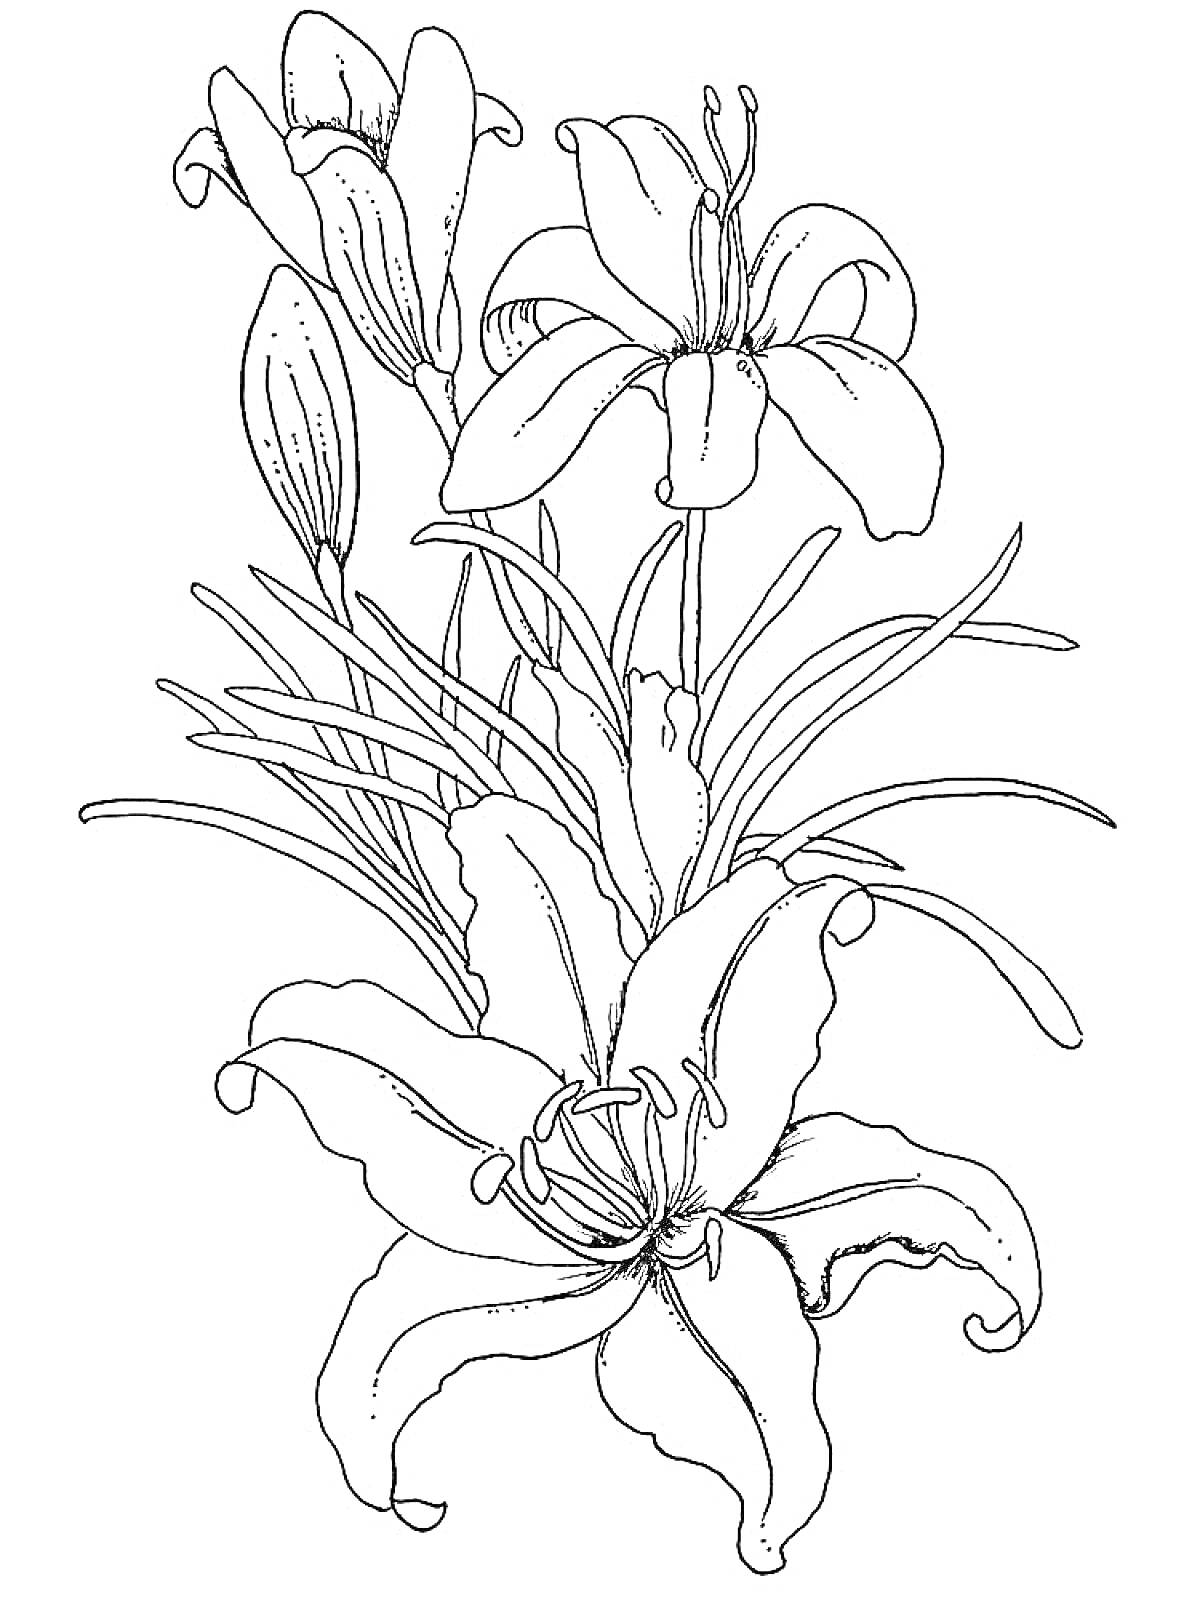 Раскраска Лилия с бутонами и раскрытыми цветками